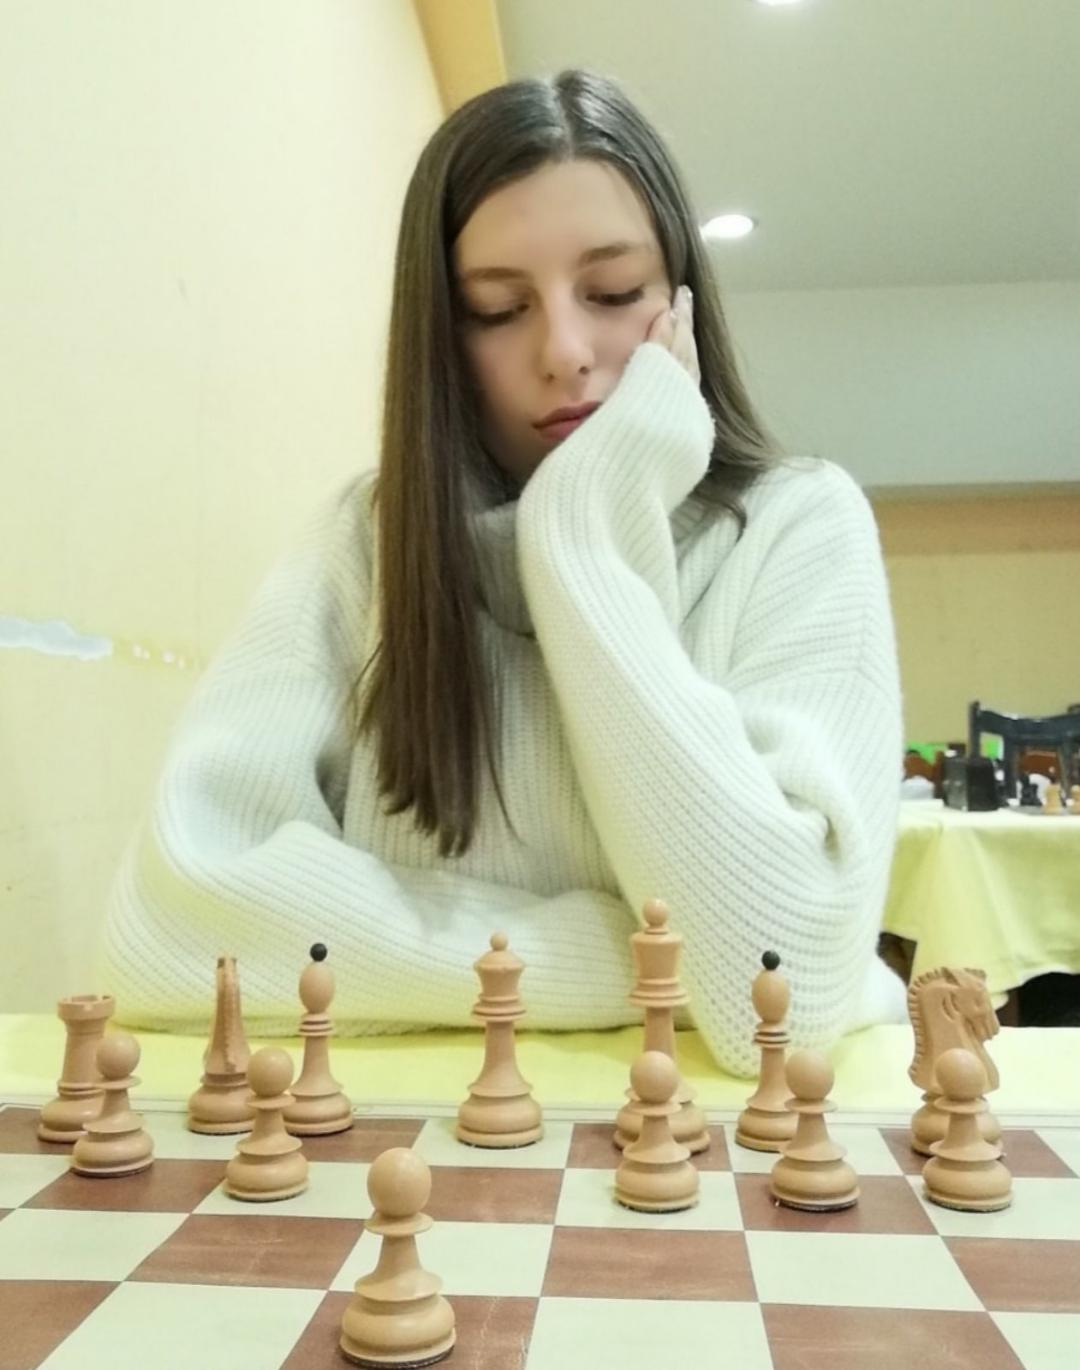 Šta me je naučio šah